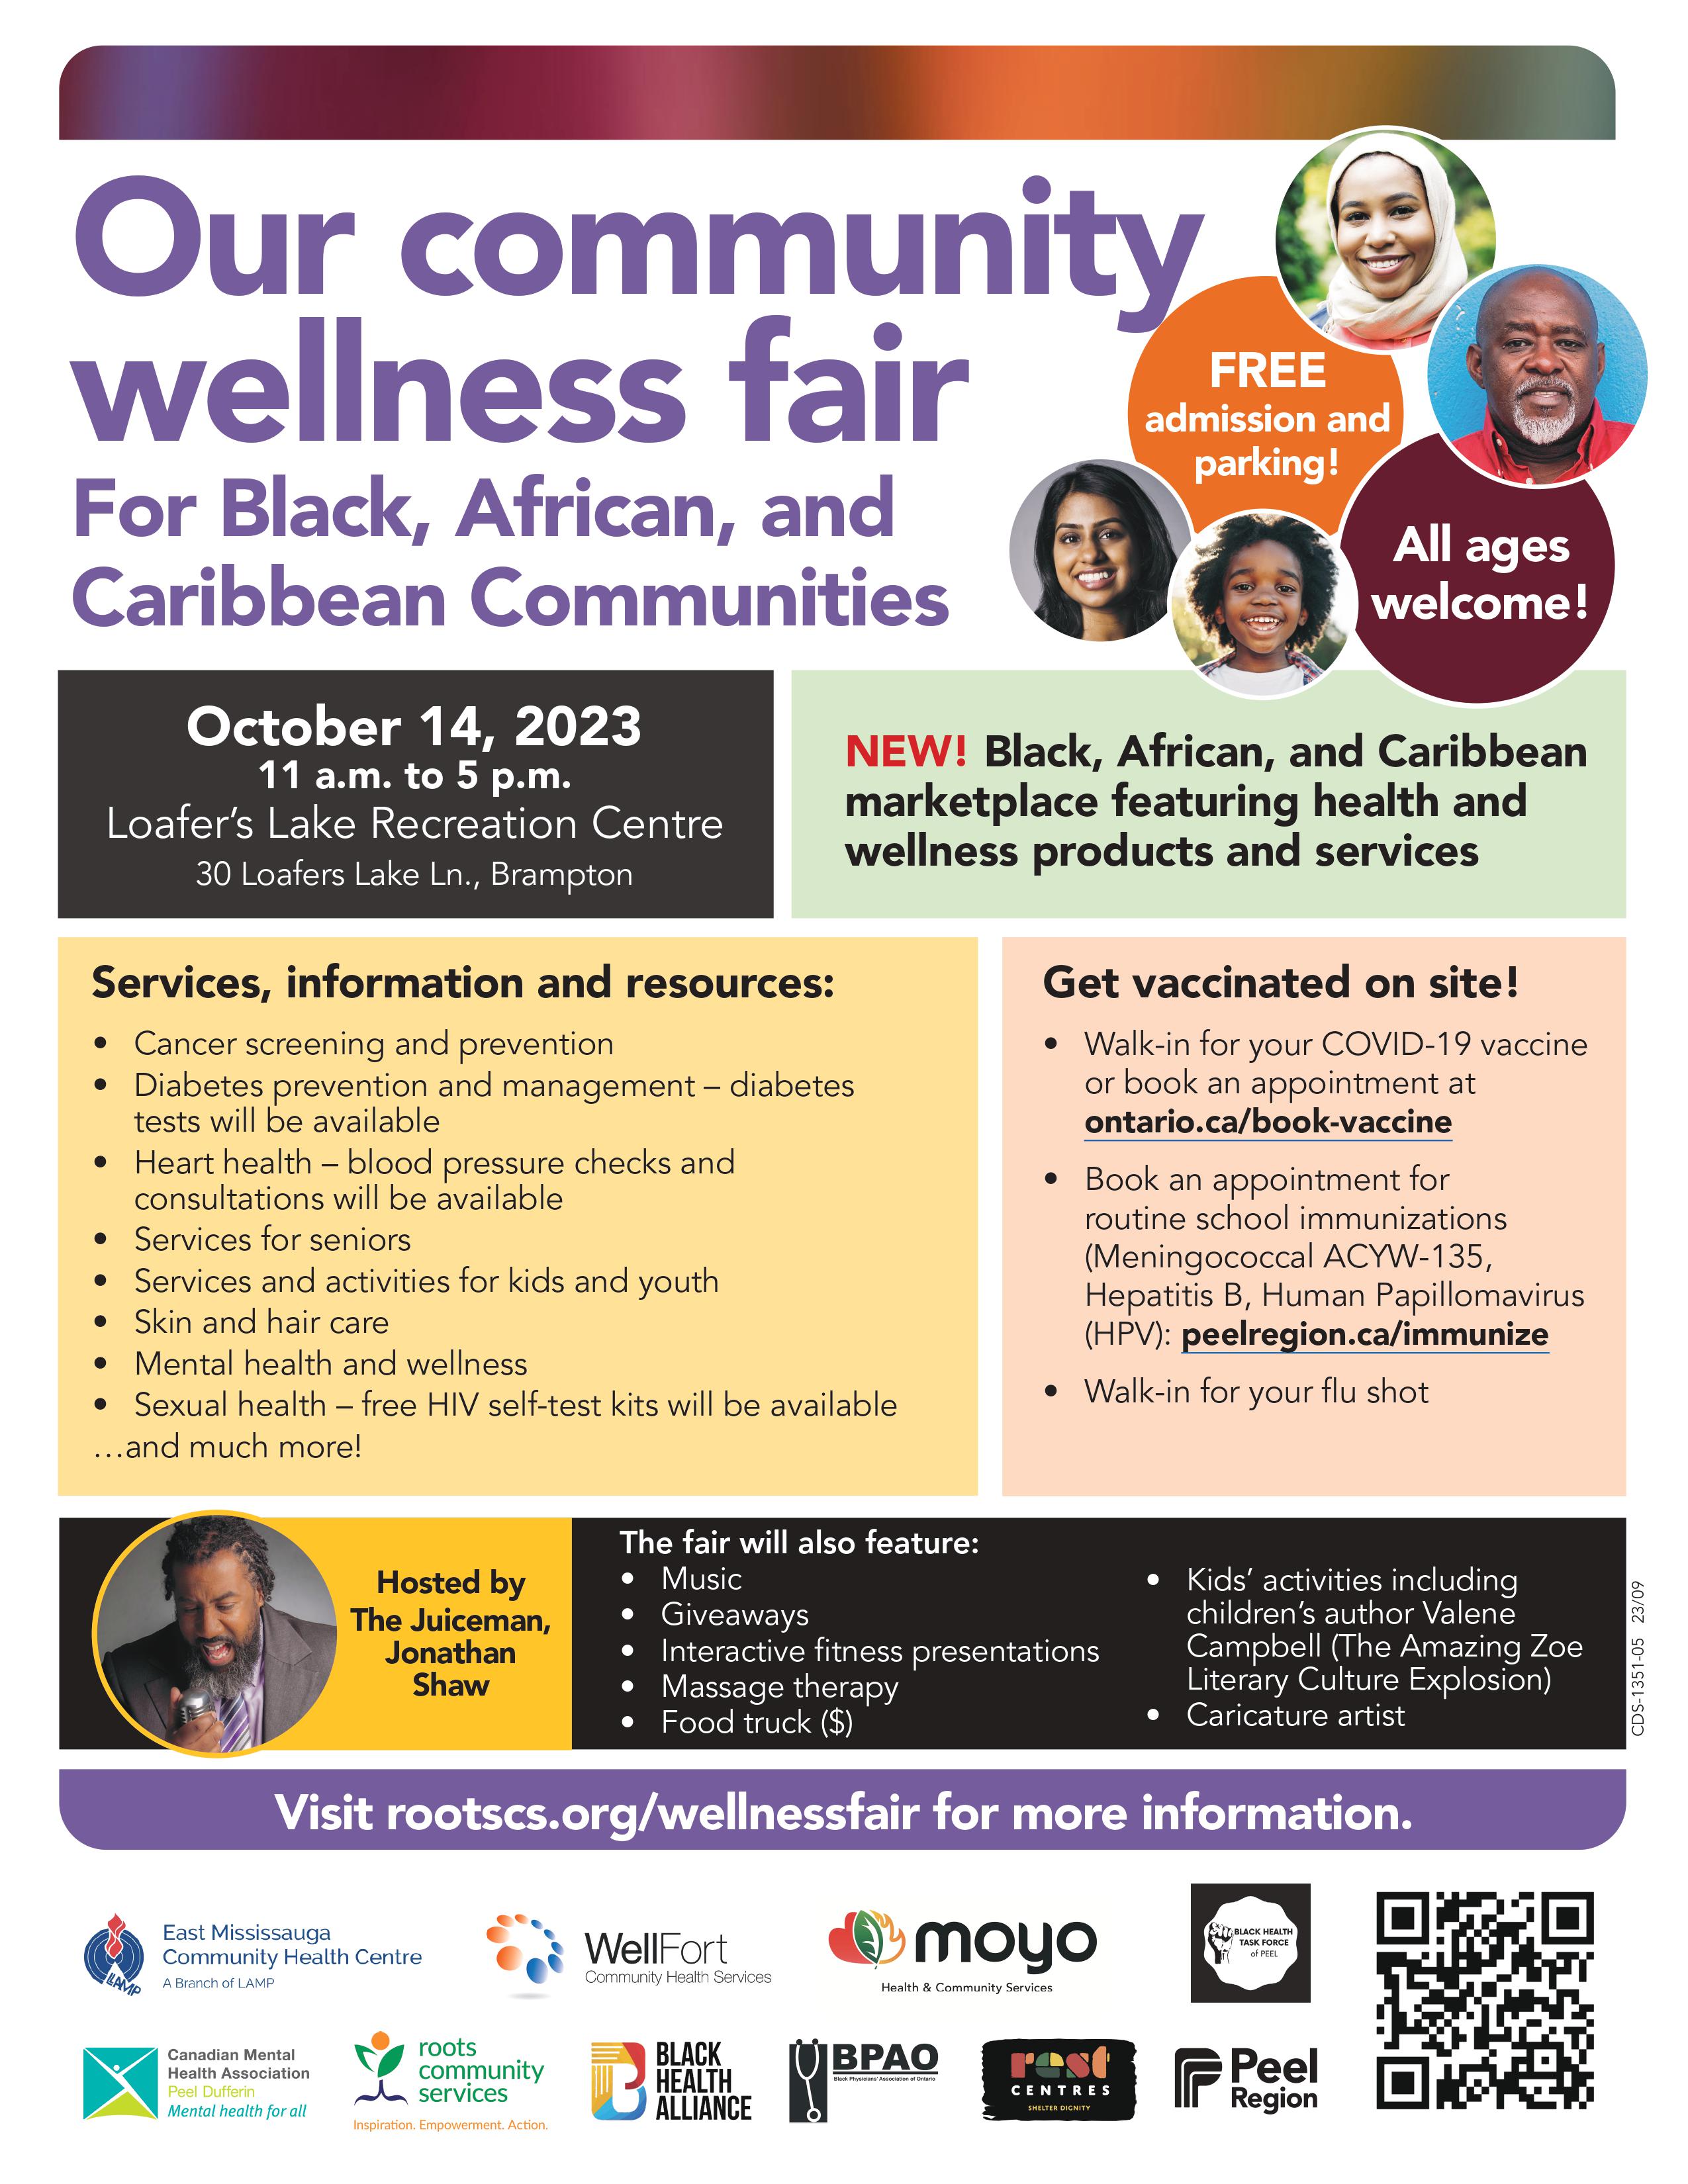 Our Community Wellness Fair